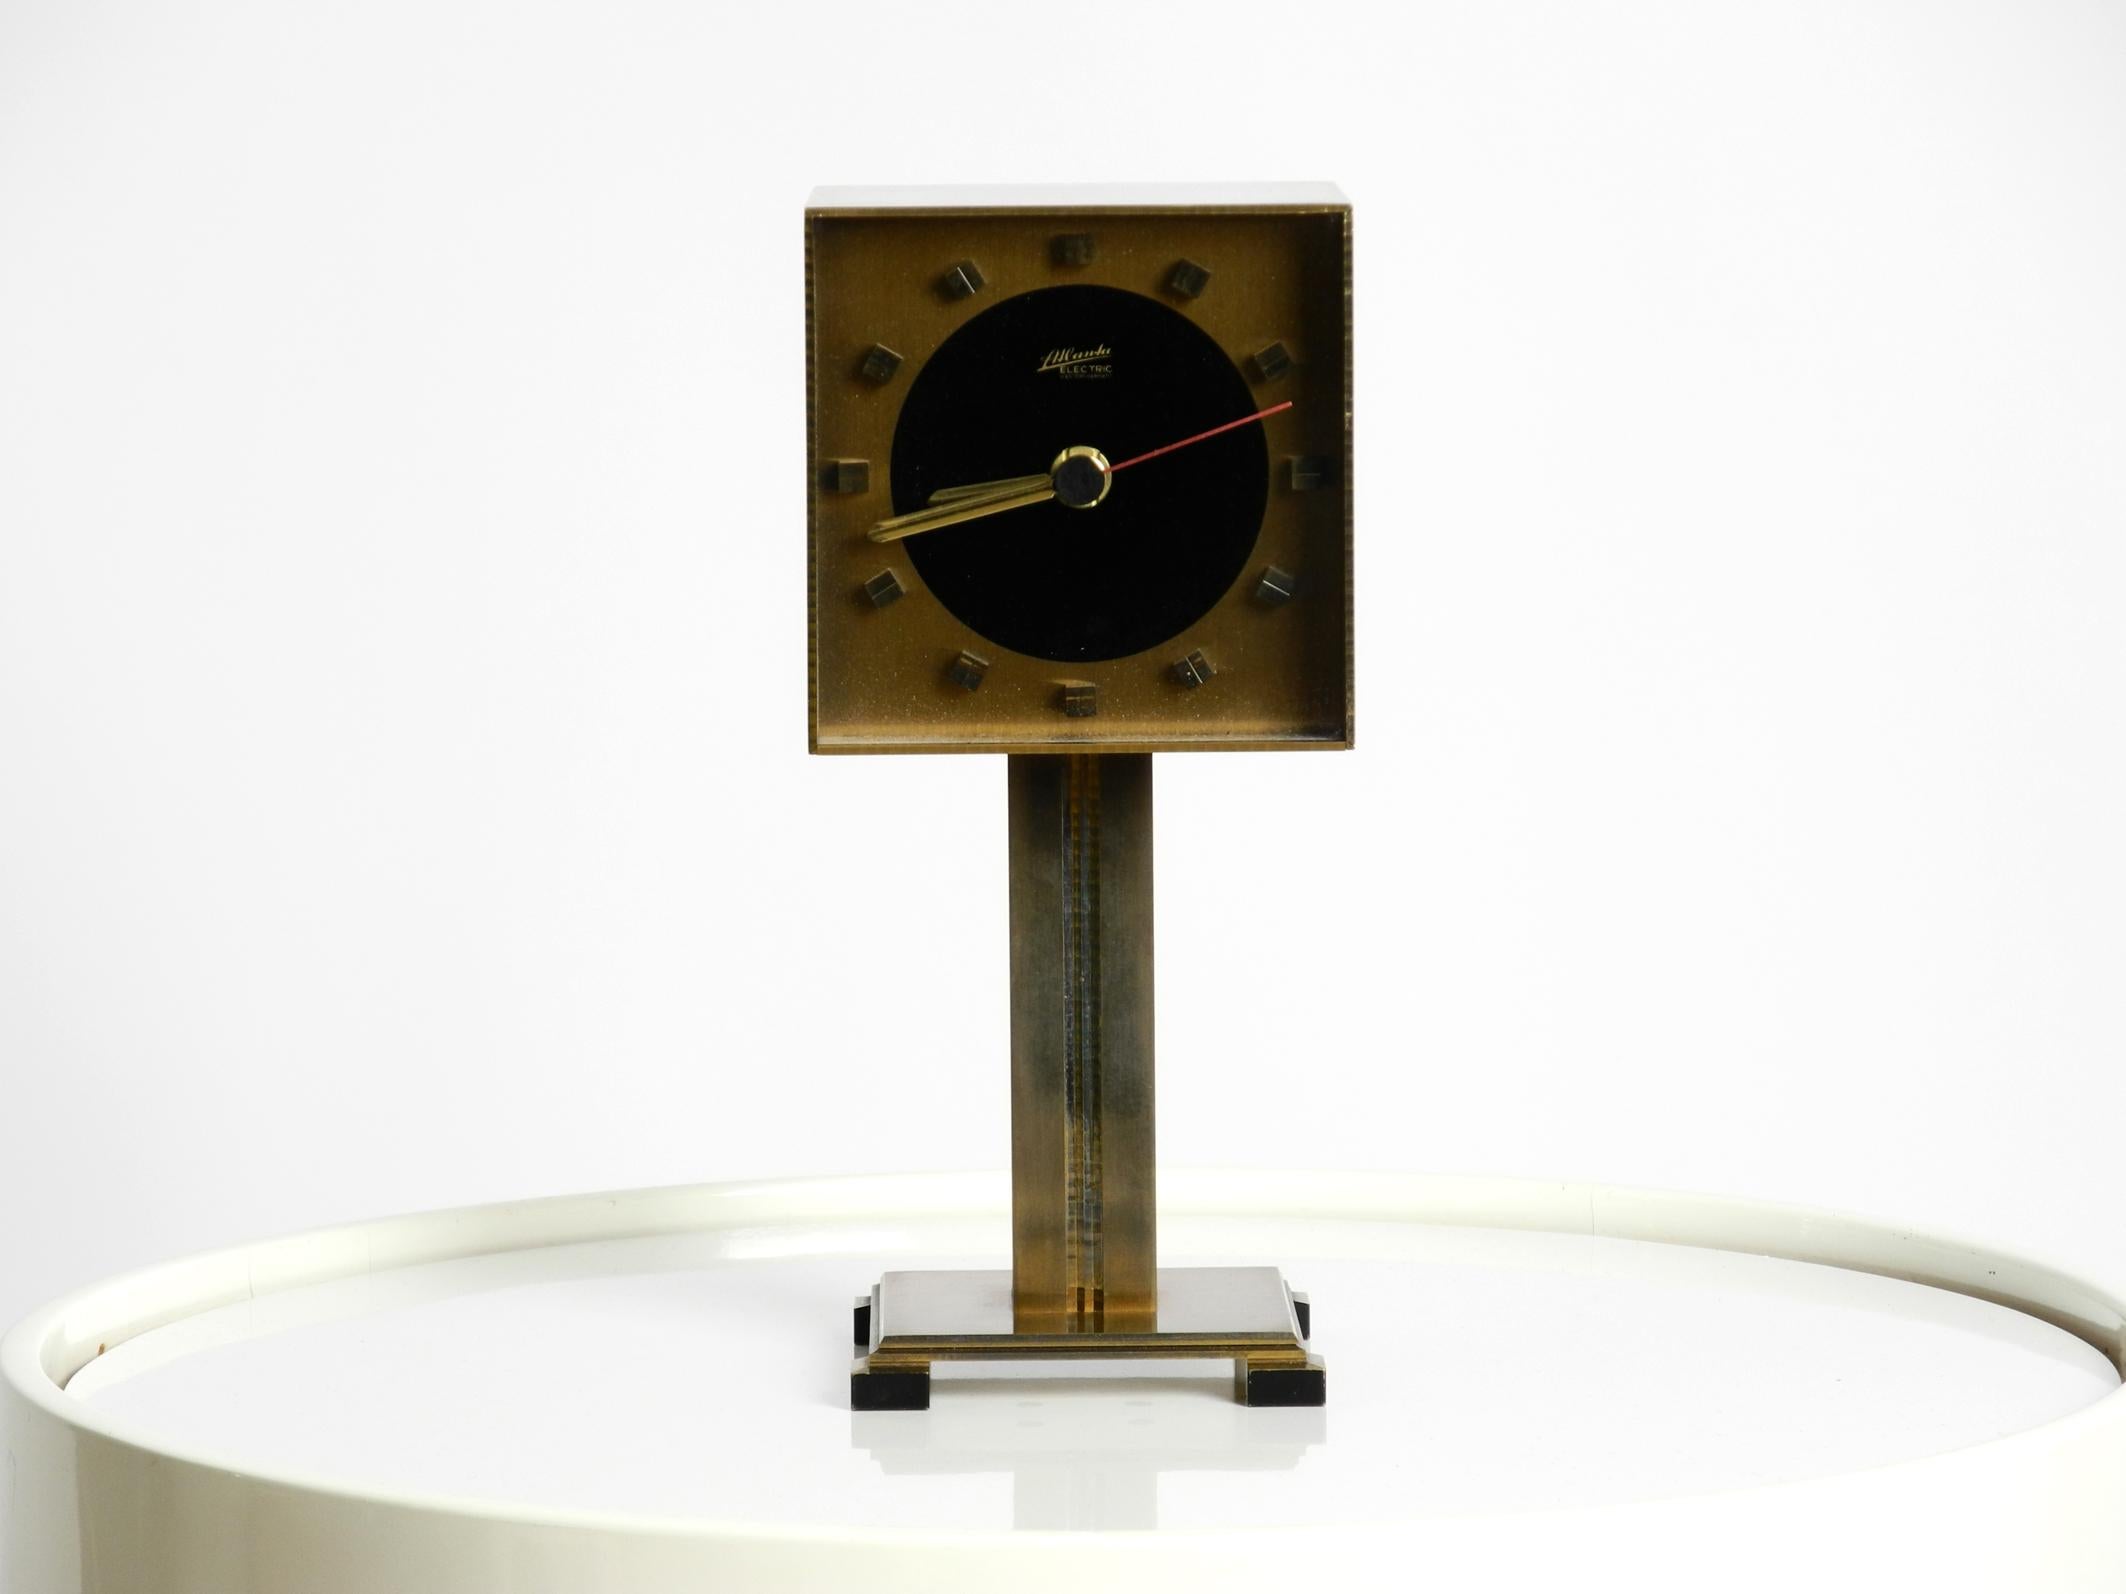 Magnifique et très rare horloge de table Atlanta Electric des années 1960. Fabriqué en Allemagne.
Tout en laiton et dans le design de la NO AGE.
Très bon état, propre et bien entretenu, sans dommage pour l'ensemble de l'horloge.
Pas de bosses ni de